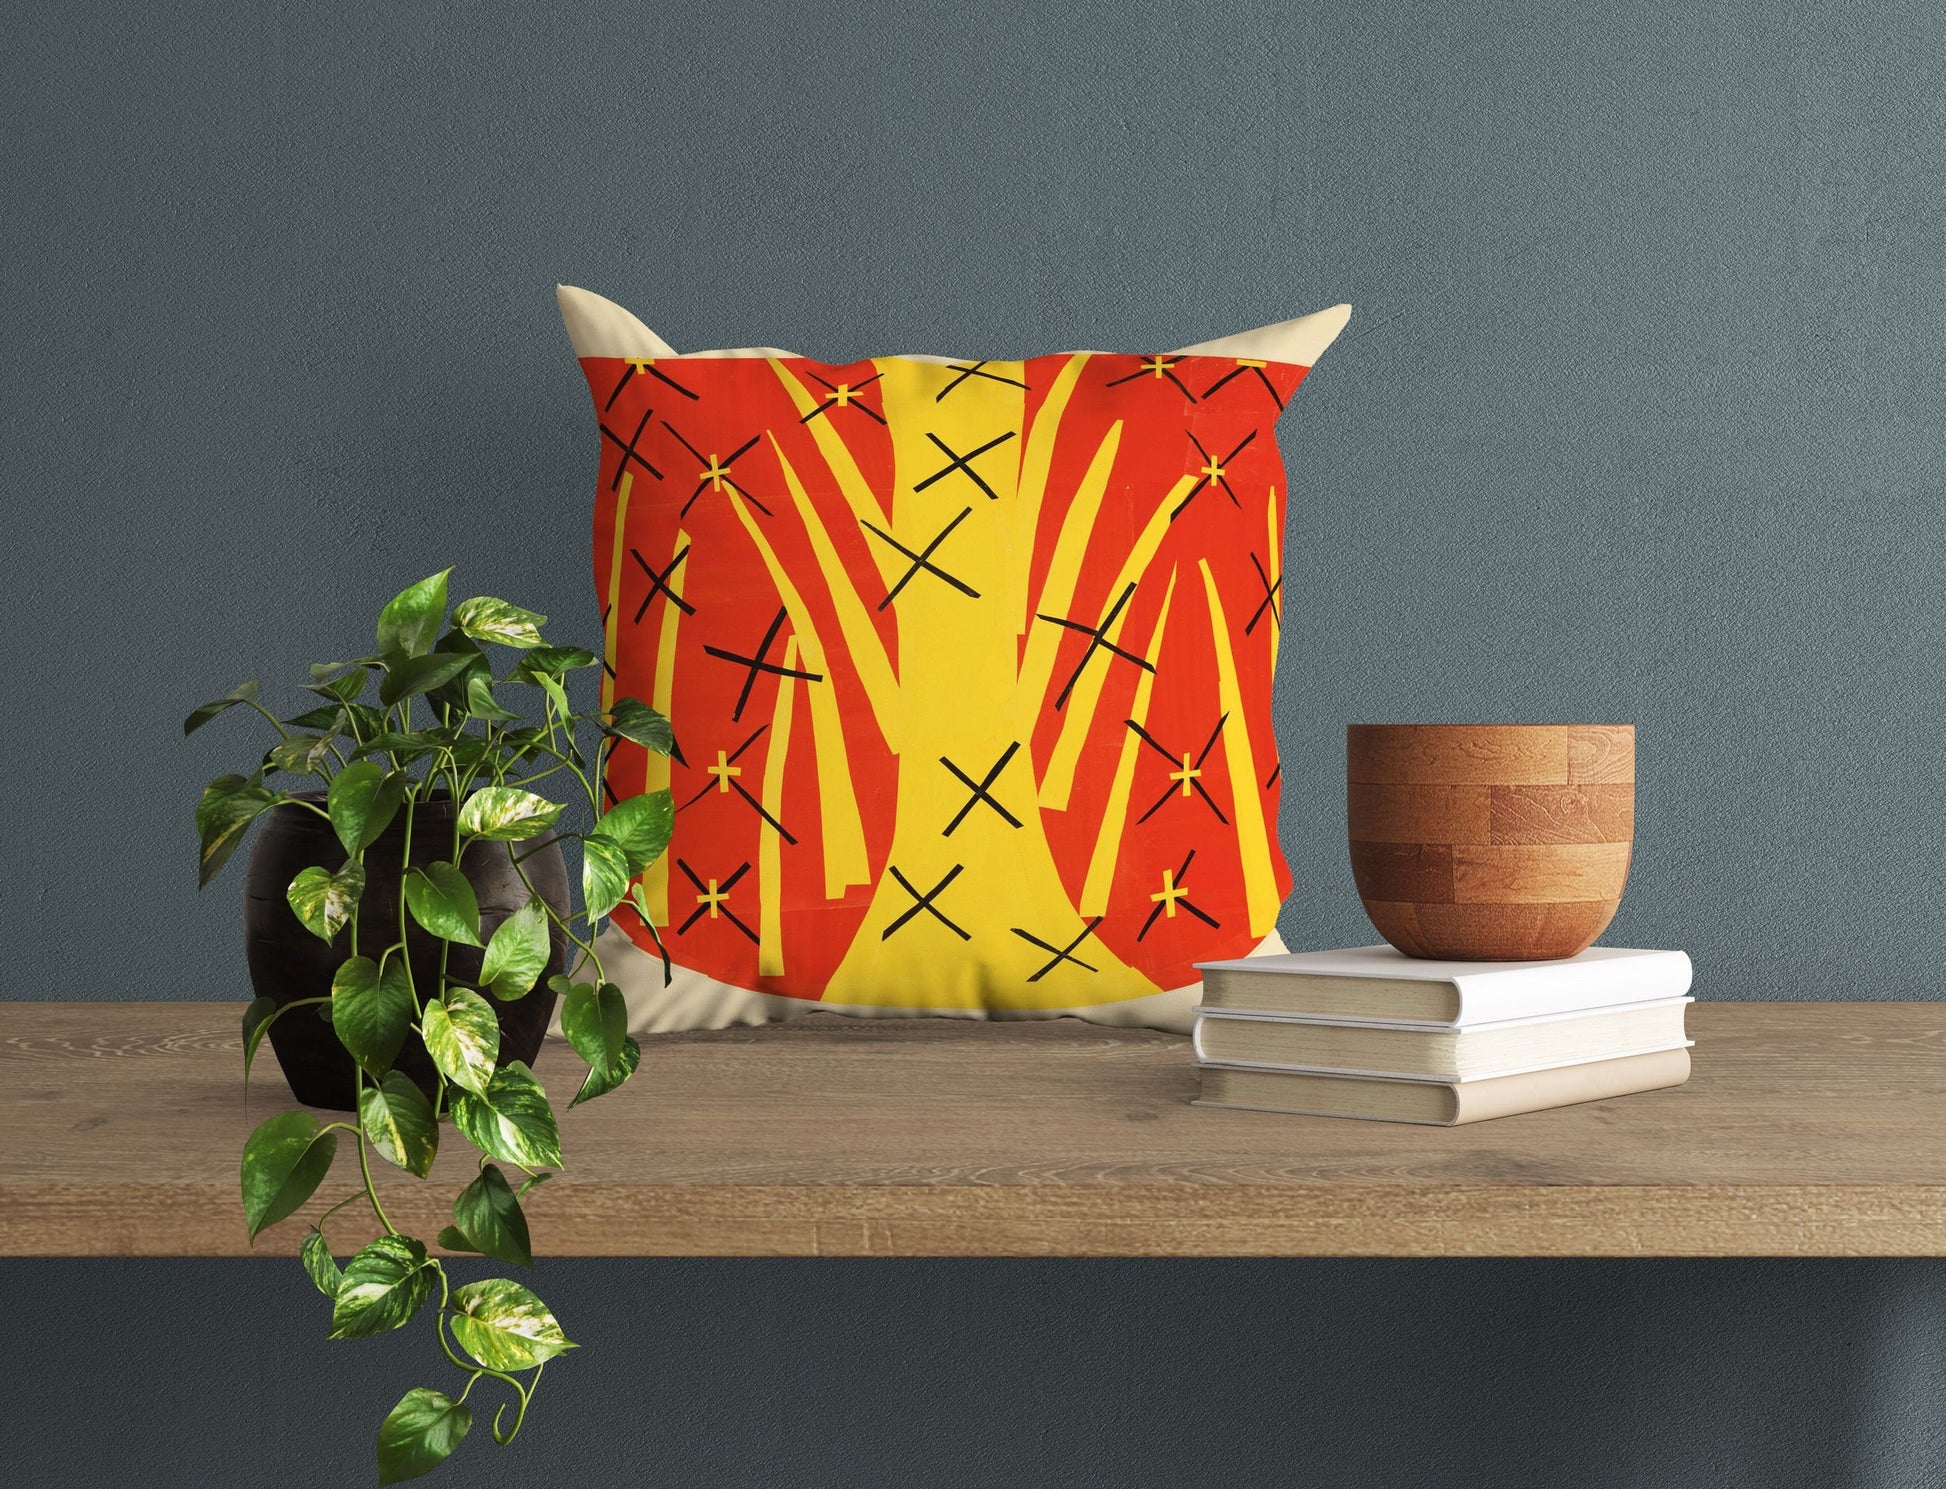 Henri Matisse Famous Art, Toss Pillow, Abstract Pillow, Artist Pillow, Colorful Pillow Case, Contemporary Pillow, Large Pillow Cases